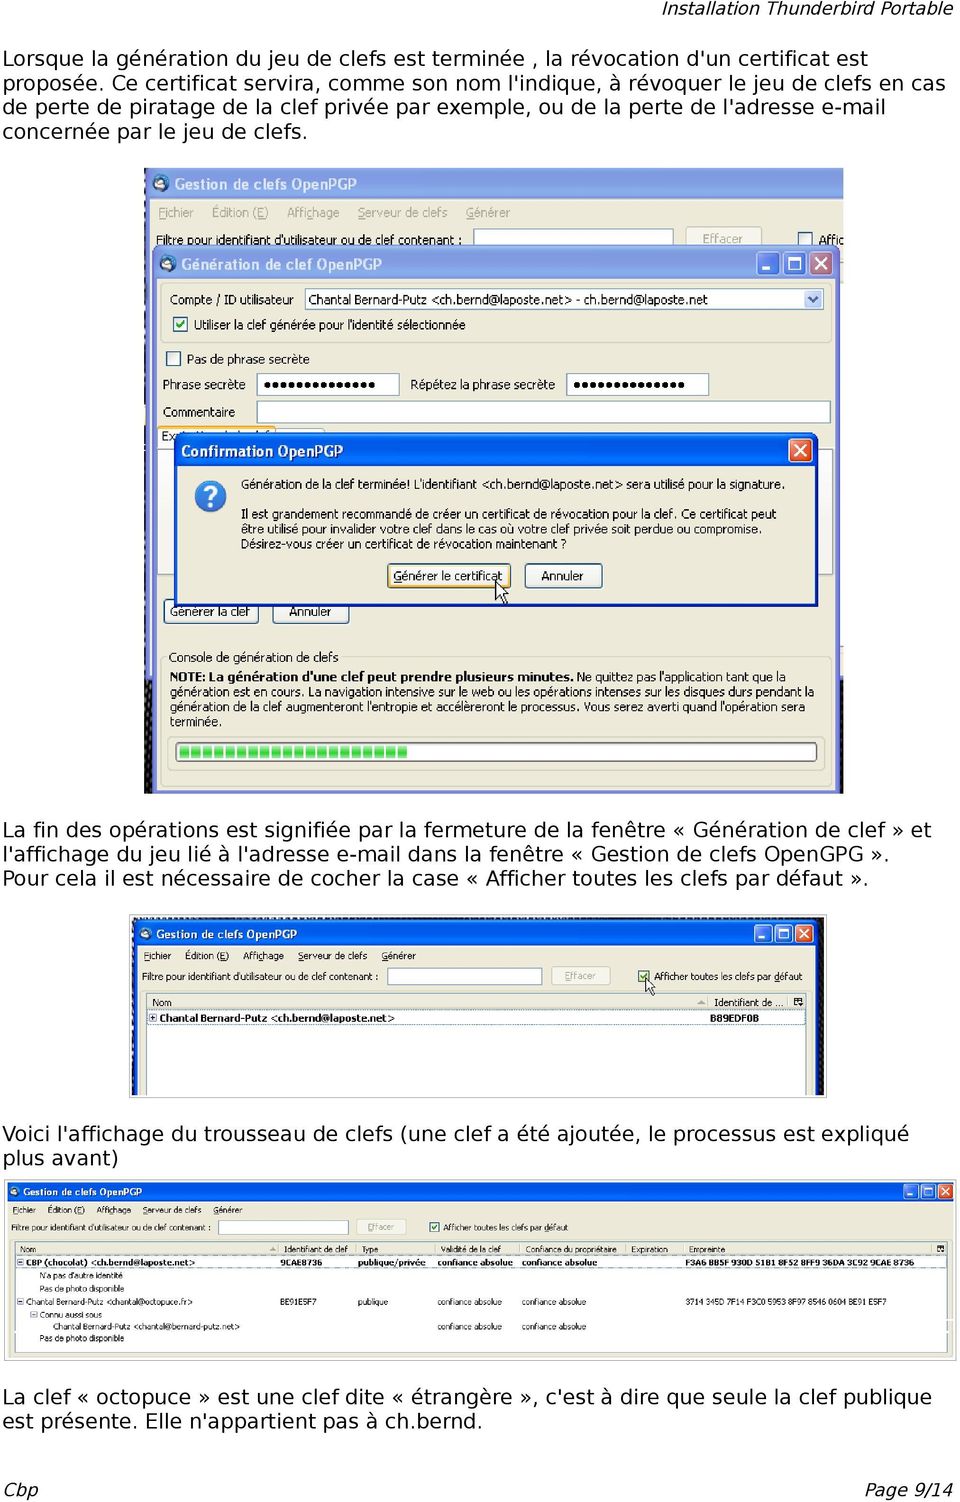 La fin des opérations est signifiée par la fermeture de la fenêtre «Génération de clef» et l'affichage du jeu lié à l'adresse e-mail dans la fenêtre «Gestion de clefs OpenGPG».